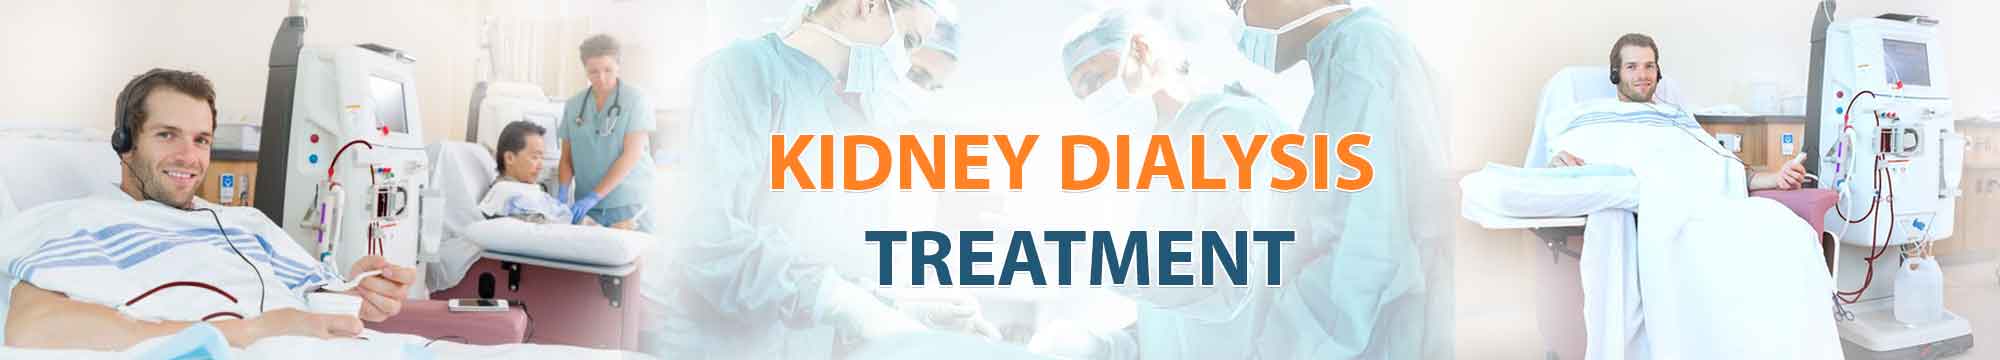 Kidney Dialysis Treatment